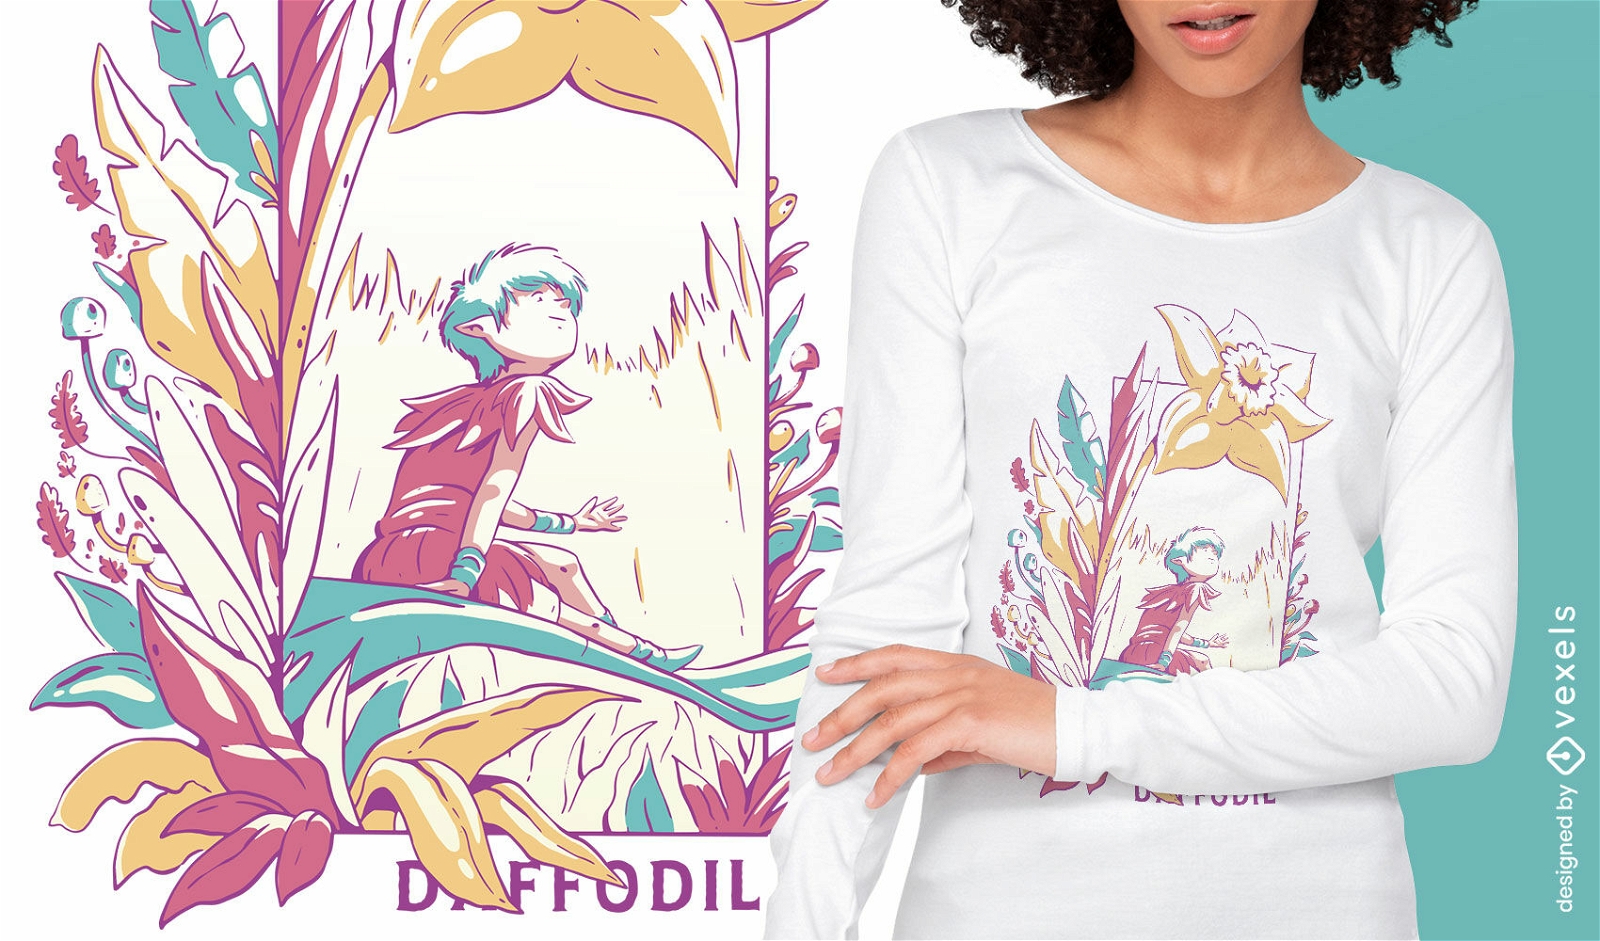 Hada mágica en diseño de camiseta de campo de flores.